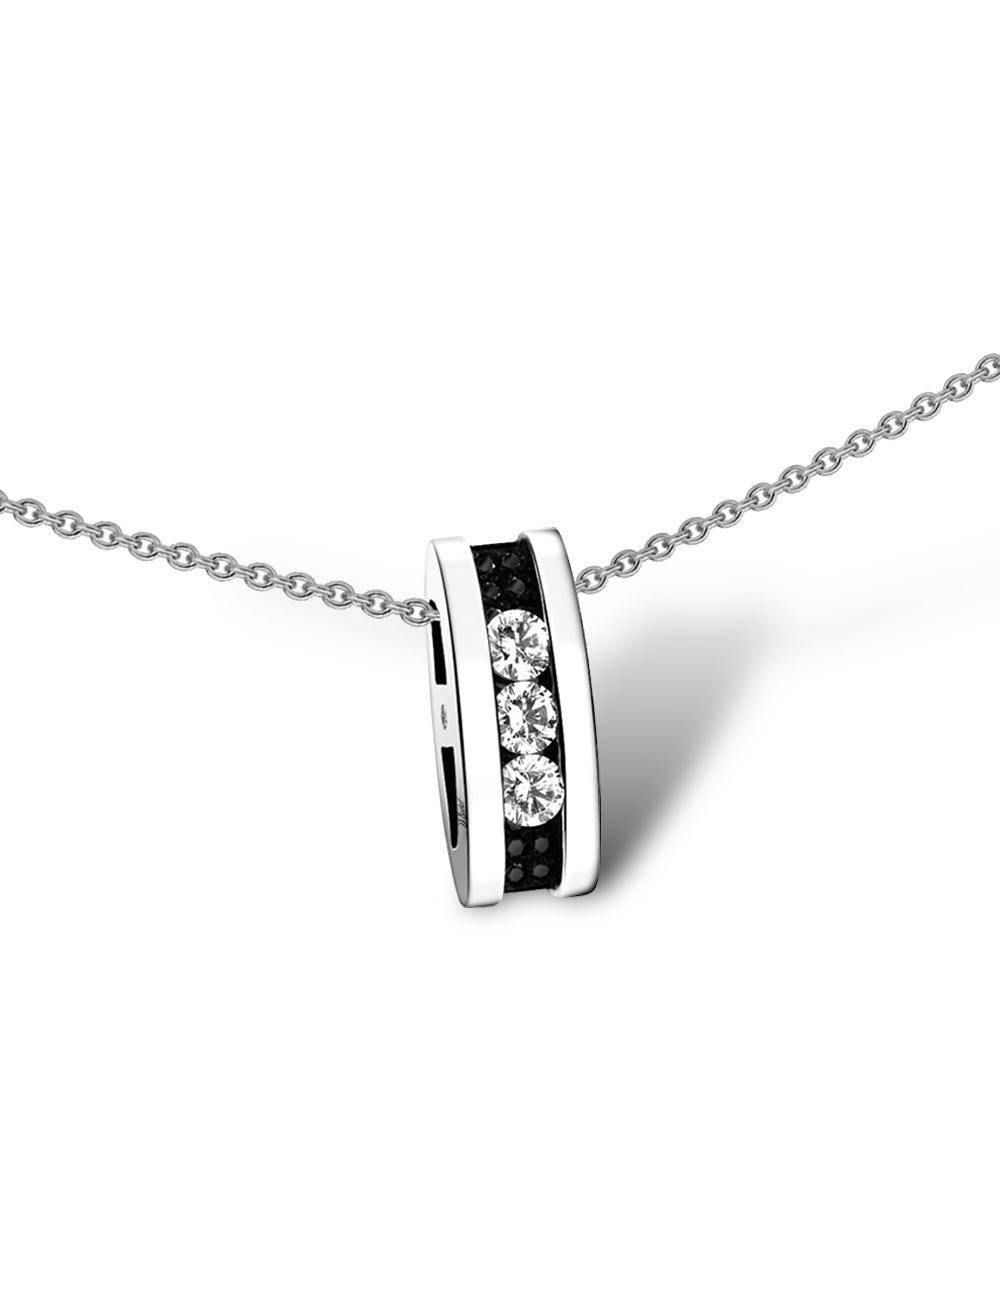 Pendentif luxe Trilogy Iconic: 0.15ct diamants, contraste chic or blanc/noir, pure élégance.